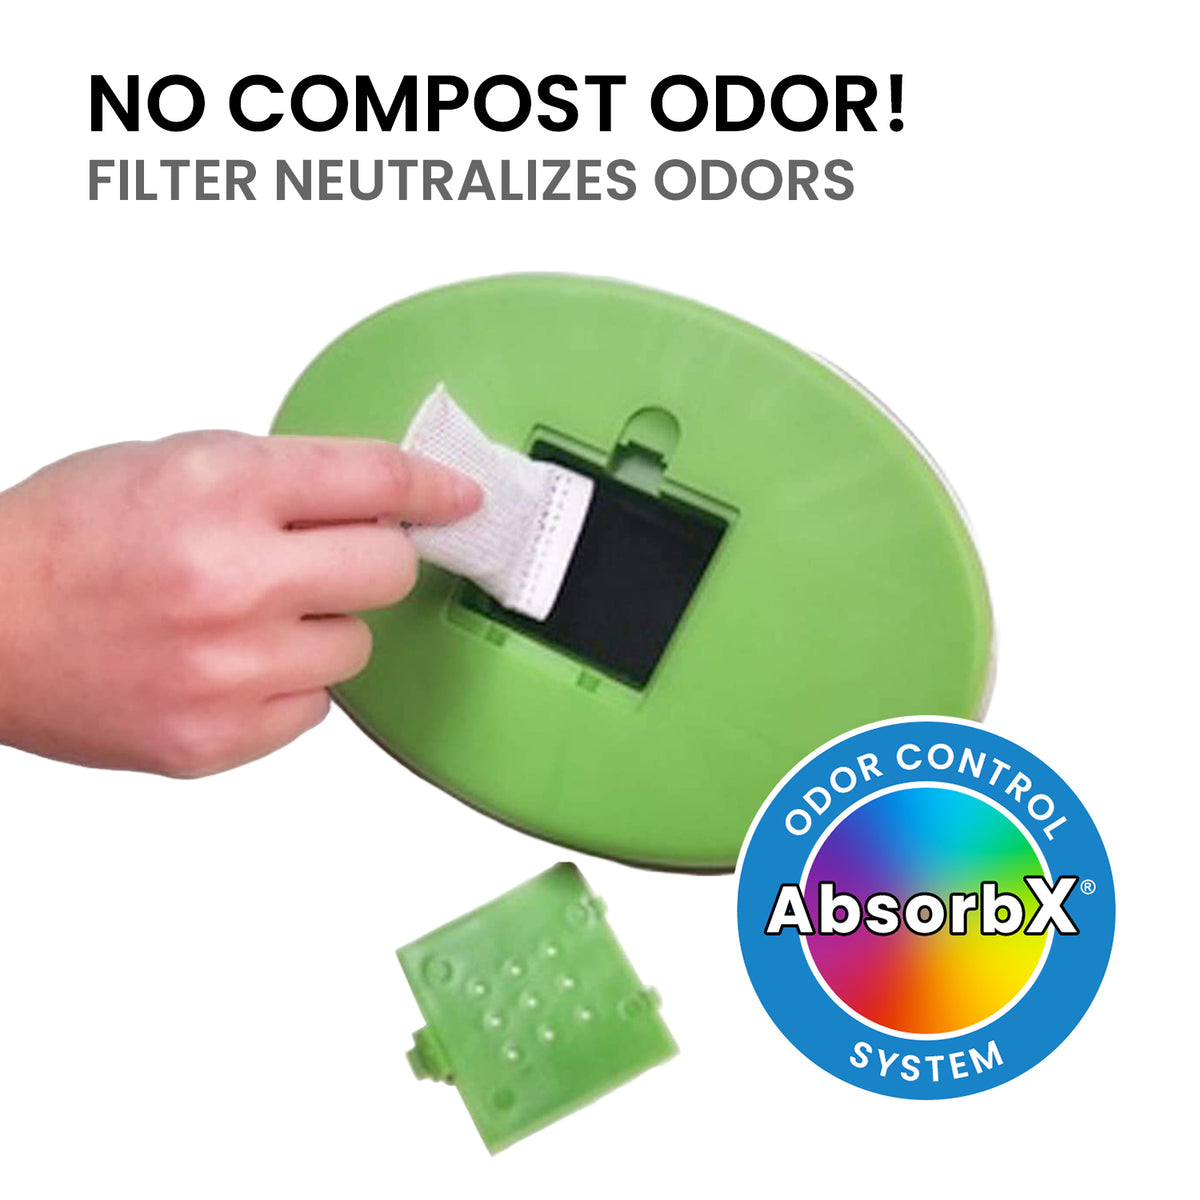 No compost odor! filter neutralizes odors